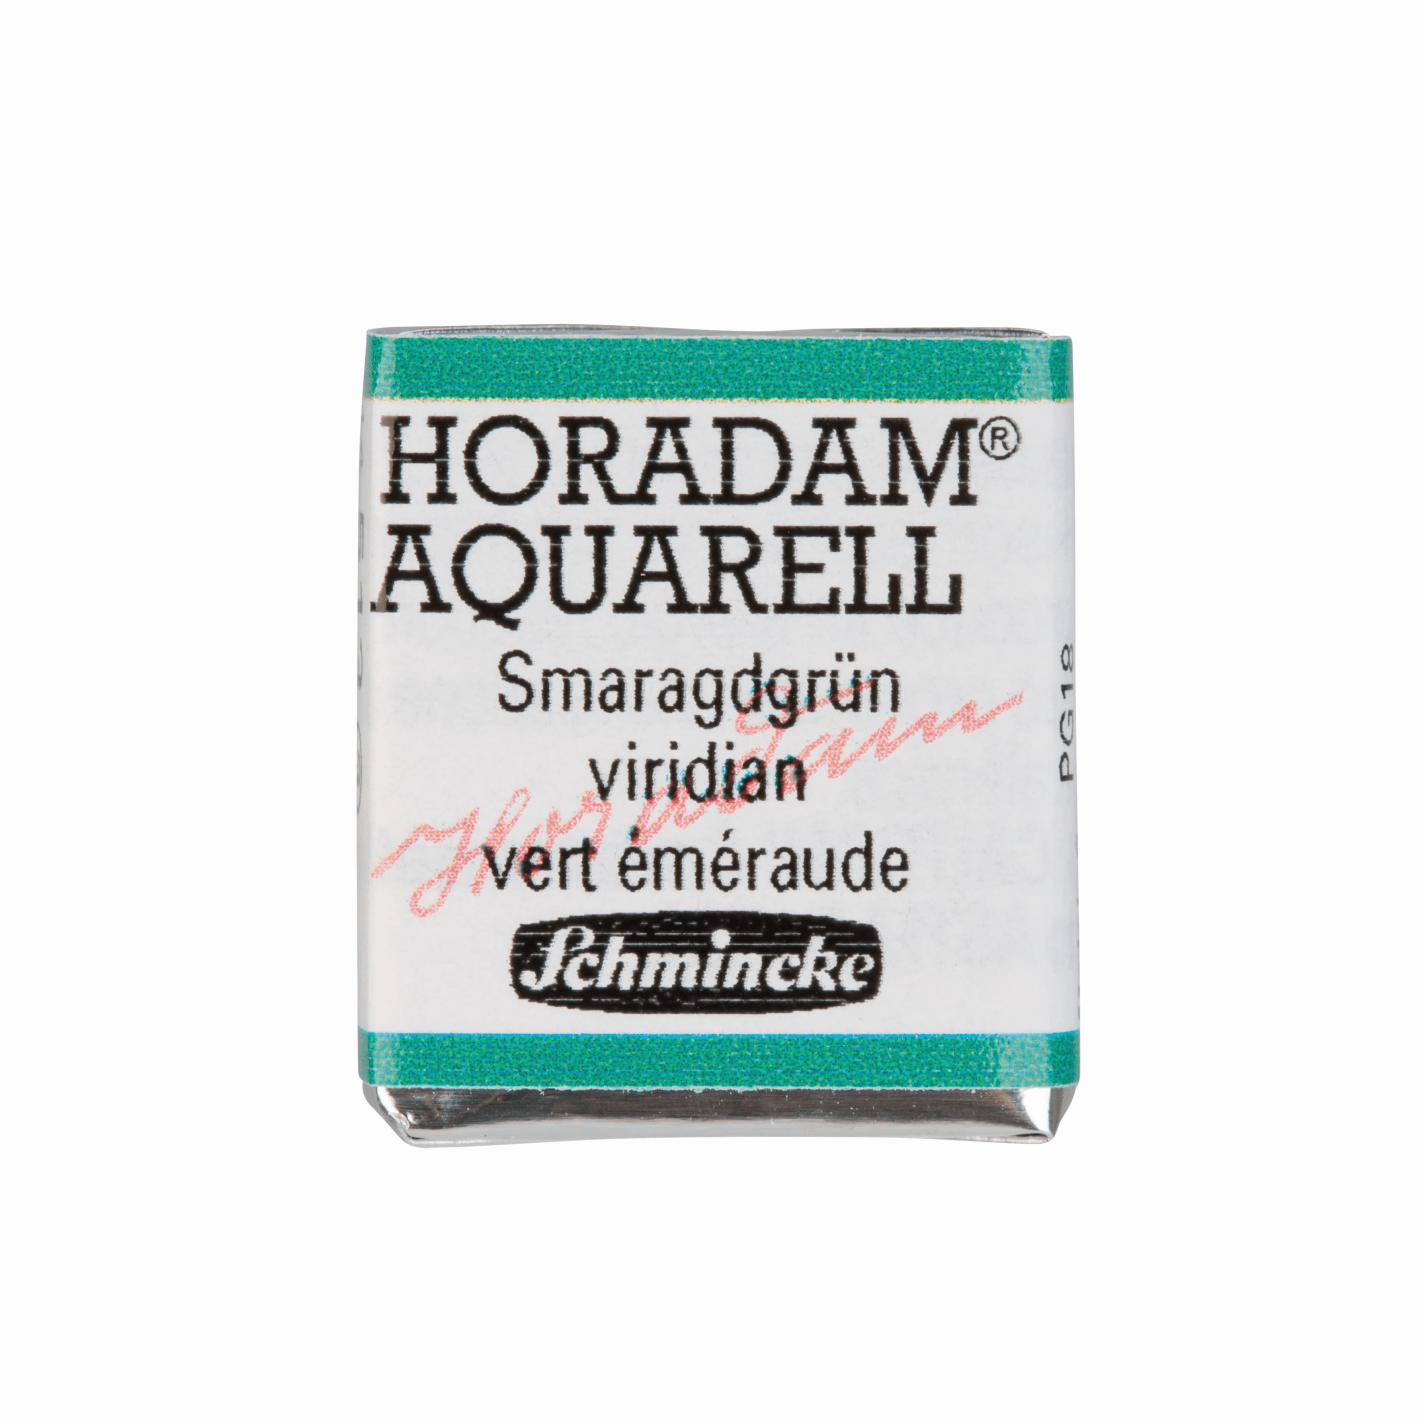 Schmincke Horadam Aquarell pans 1/2 pan Viridian